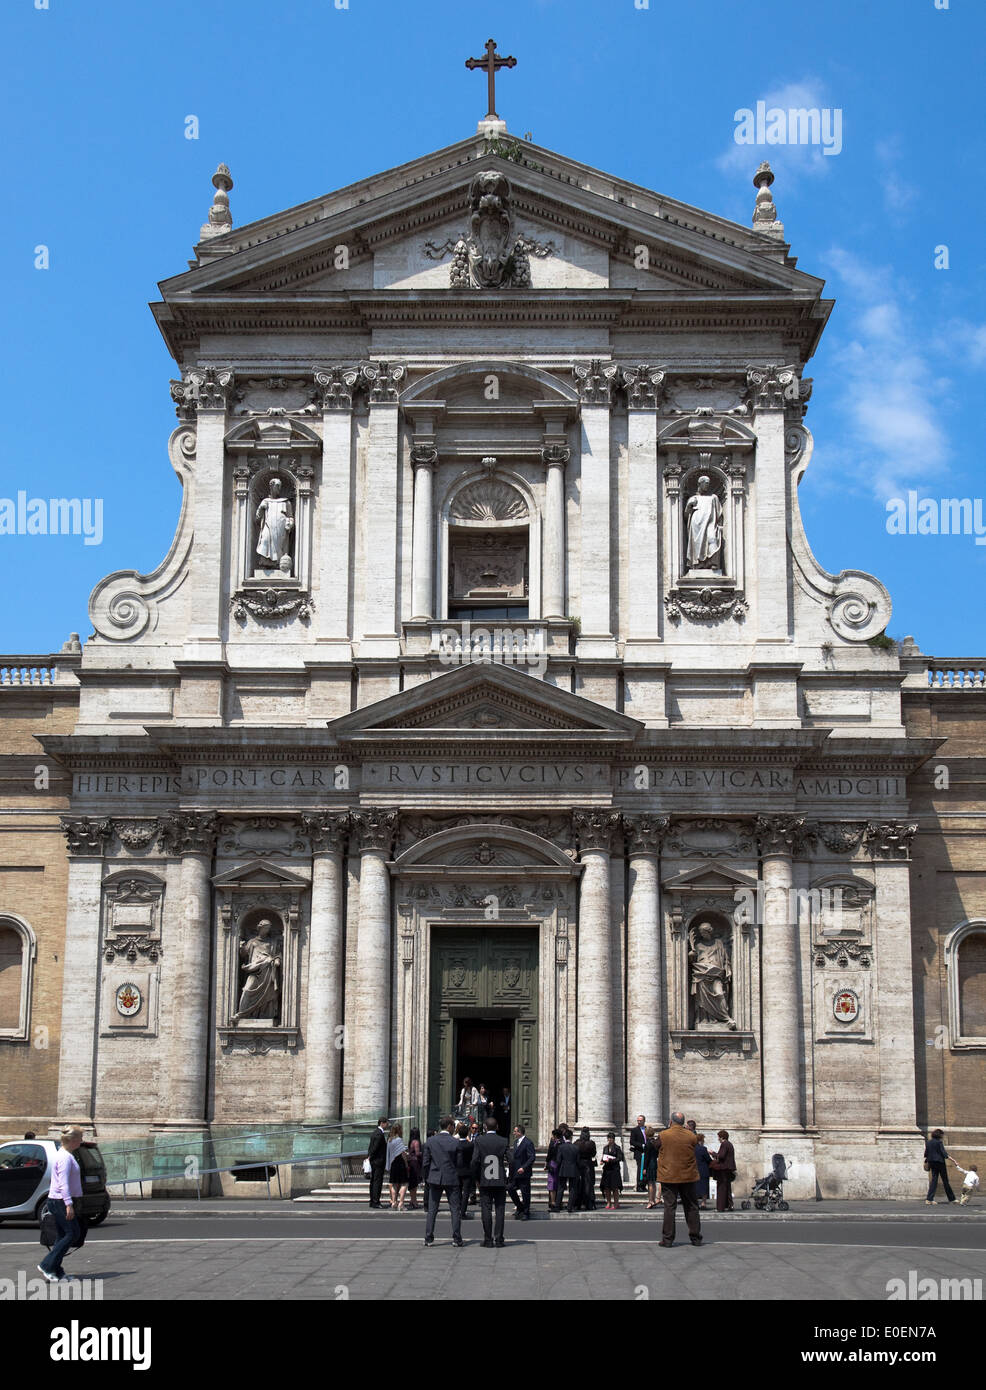 Kirche, Rom, Italien - Kirche, Rom, Italien Stockfoto